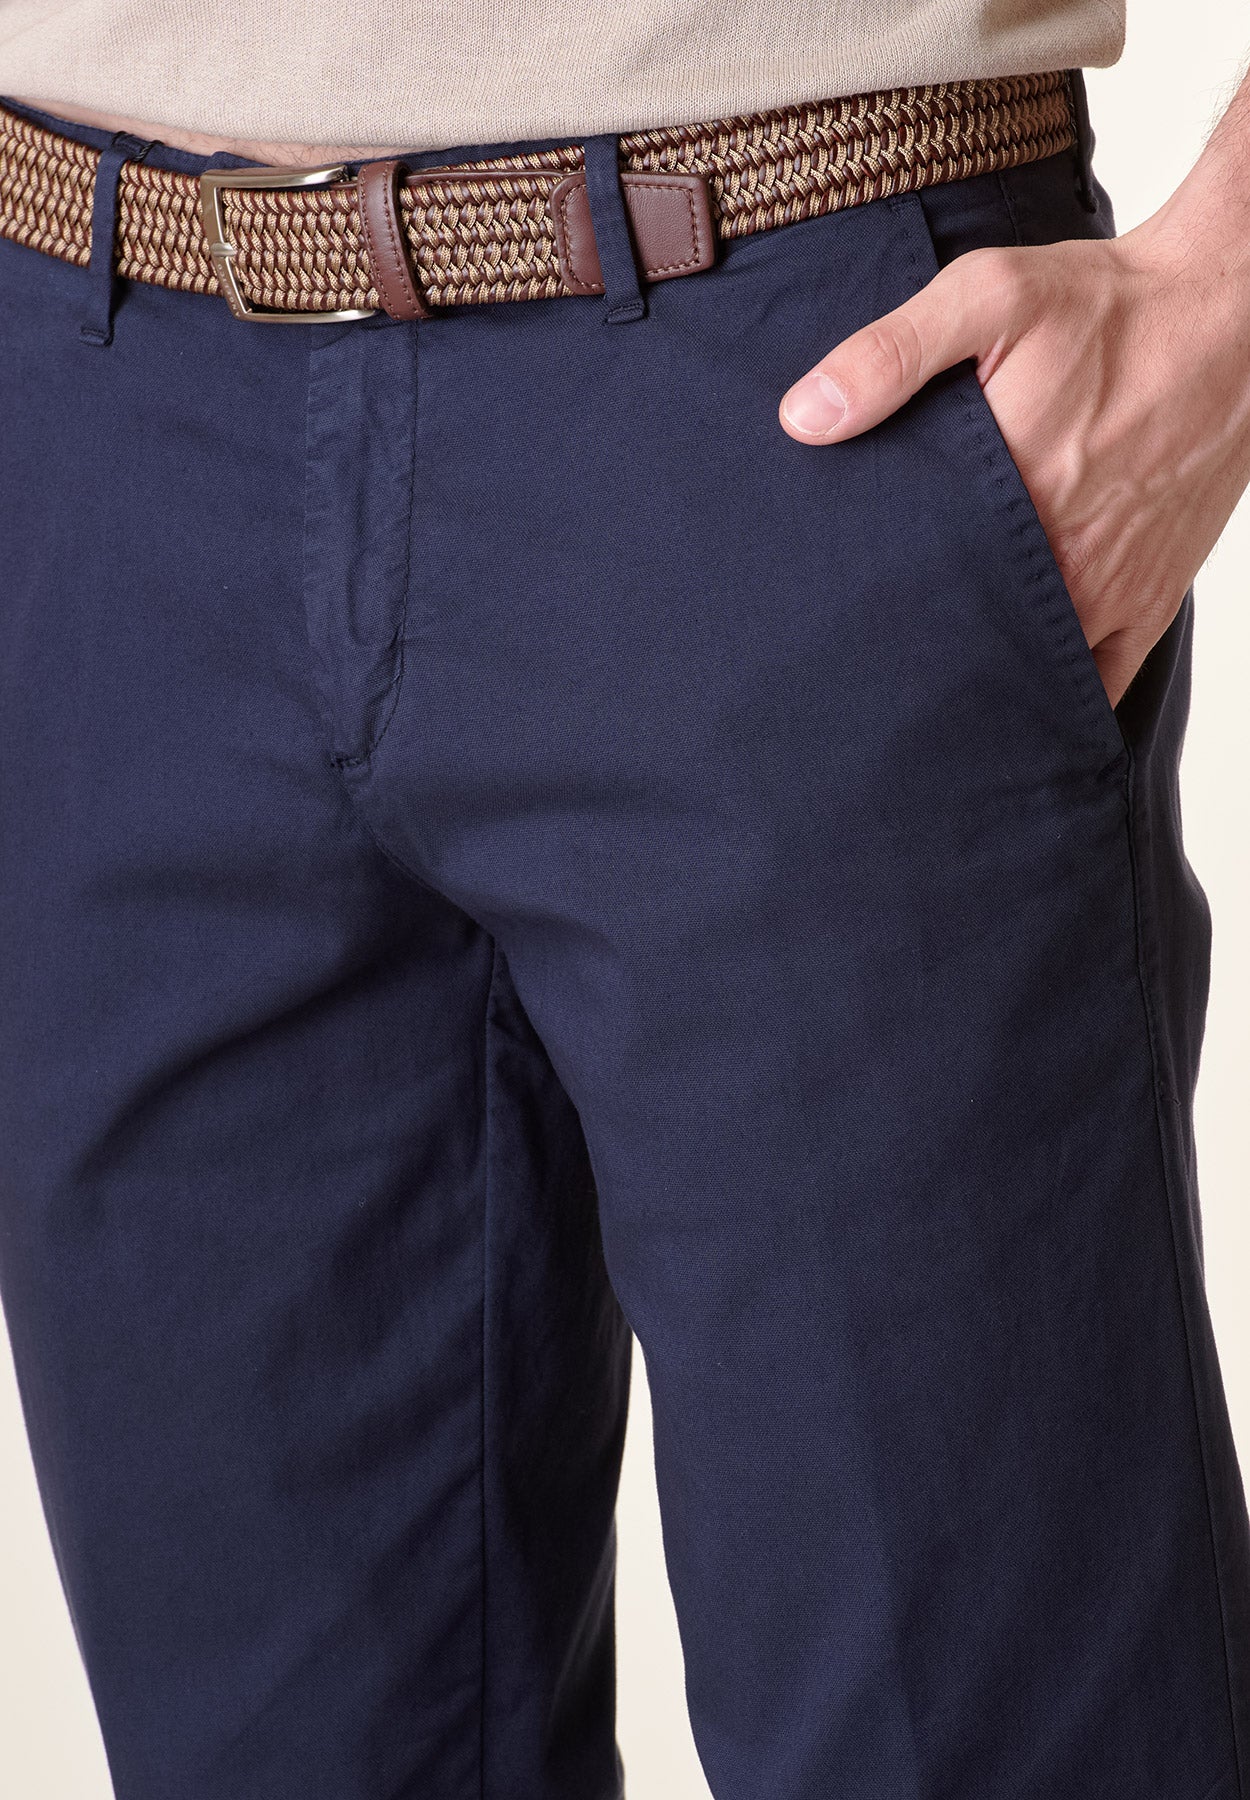 Pantalone blu cotone stretch regular fit